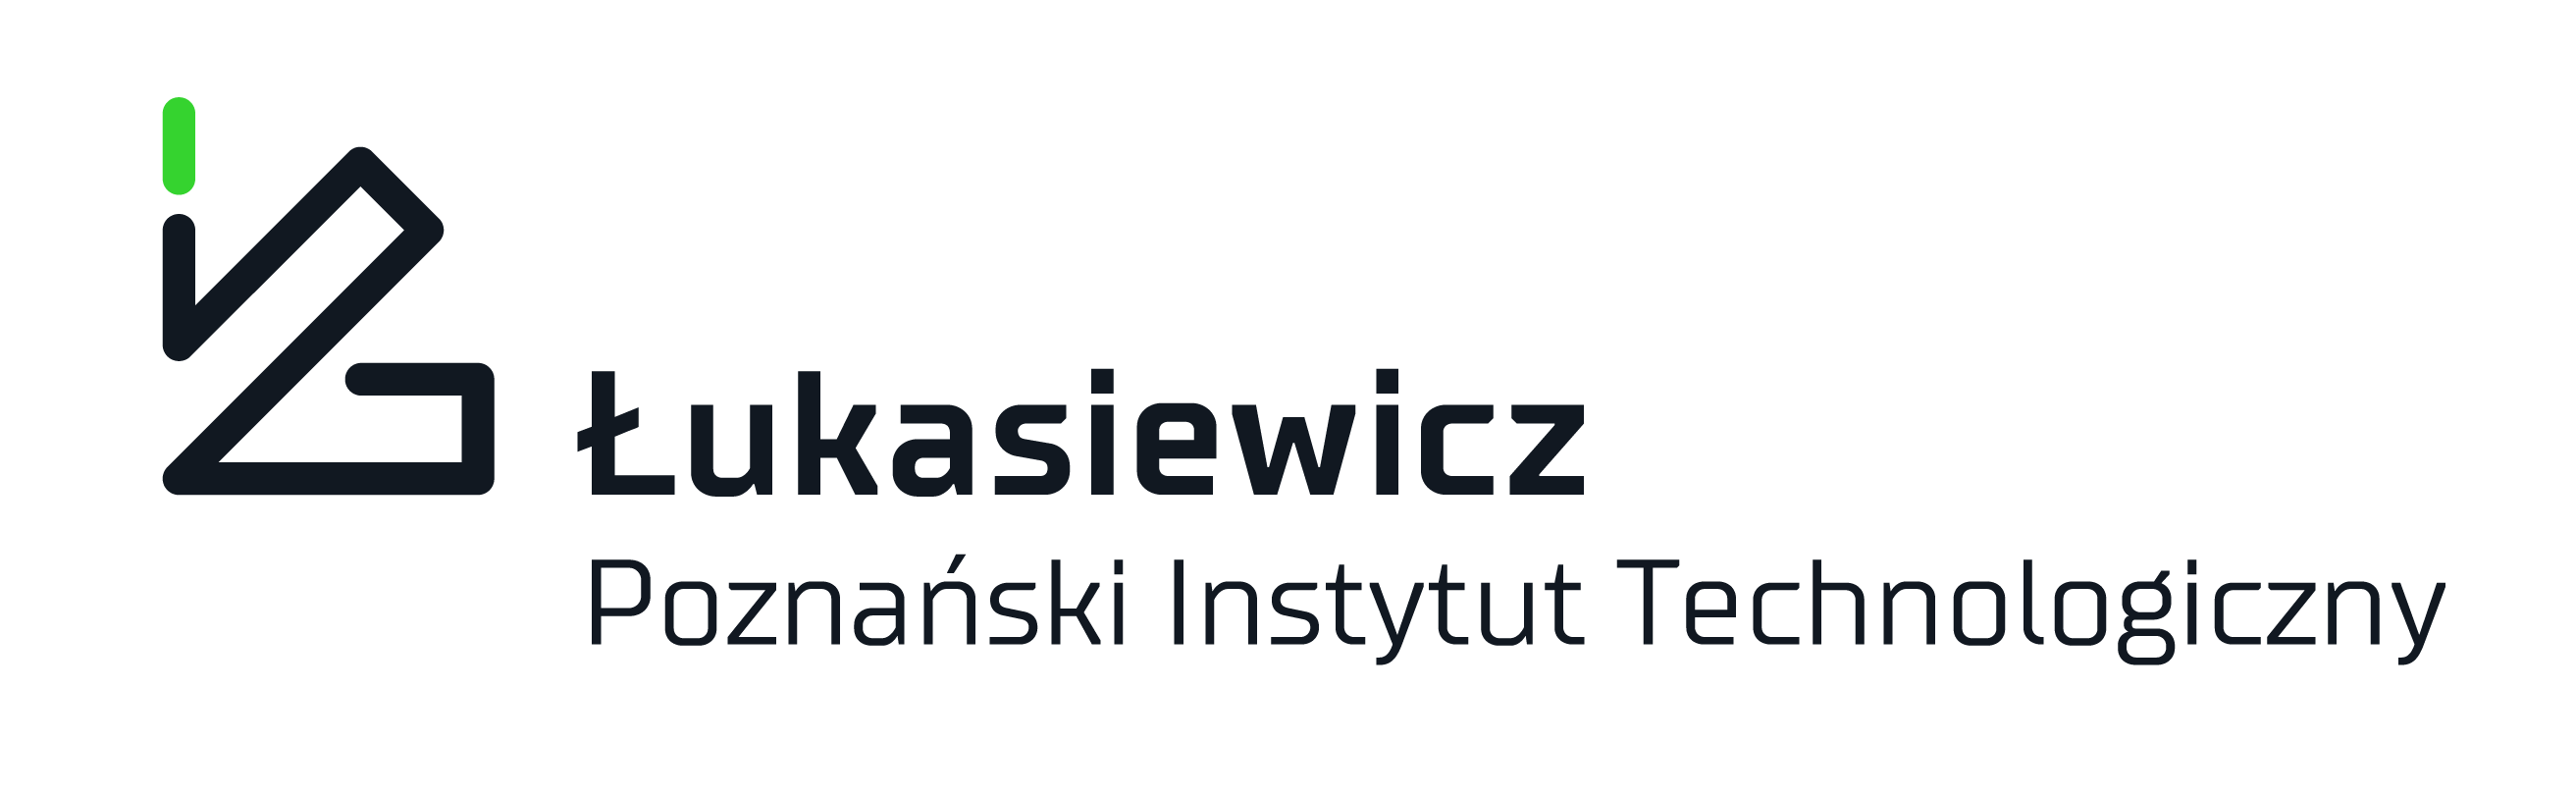 PIT Łukasiewicz logo